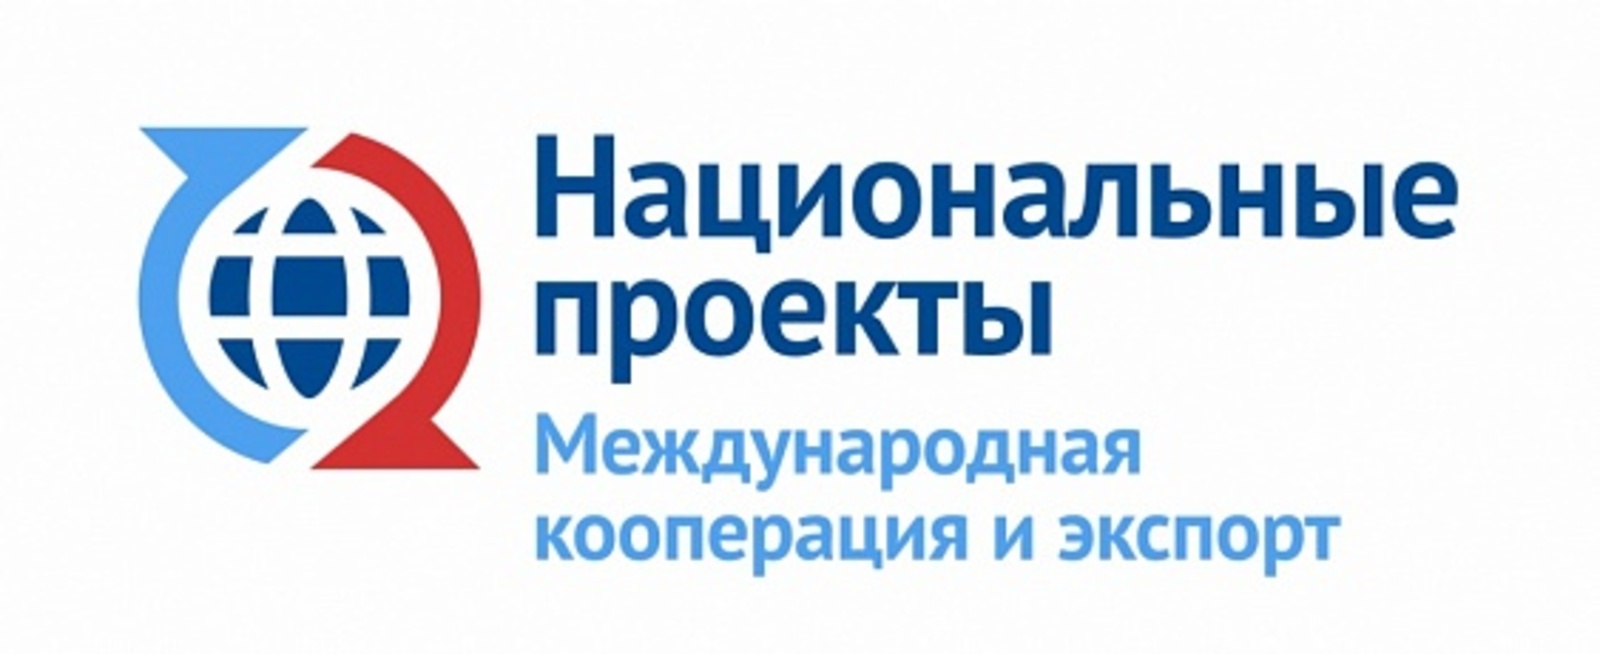 В Уфе прошло третье заседание Клуба экспортеров Республики Башкортостан